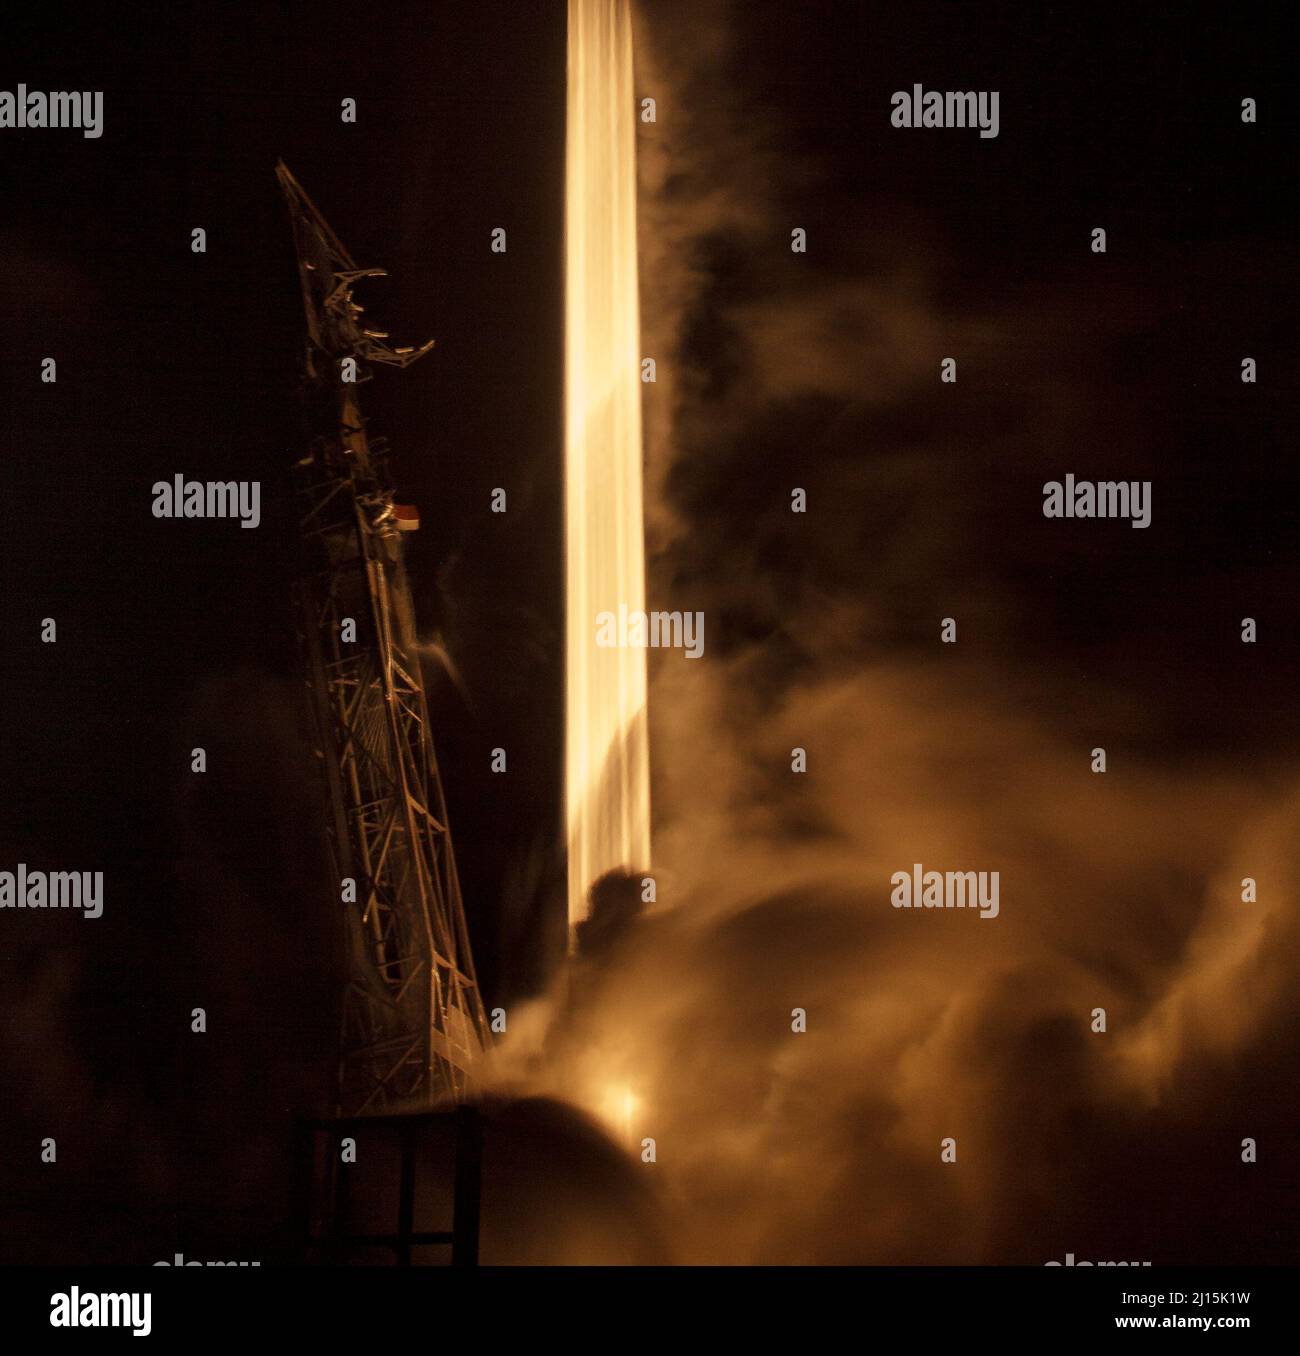 La fusée SpaceX Falcon 9 est vue dans cette photographie d'exposition de 30 secondes alors qu'elle se lance avec le test de redirection des astéroïdes doubles, ou DART, vaisseau spatial à bord, le mardi 23 novembre, 2021, heure du Pacifique (nov 24 heure de l'est) du complexe de lancement spatial 4E à la base de la force spatiale de Vandenberg, en Californie. La DART est le premier test de défense planétaire à grande échelle au monde, démontrant une méthode de la technologie de déflexion des astéroïdes. La mission a été construite et est gérée par l'APL Johns Hopkins pour le Bureau de coordination de la défense planétaire de la NASA. Crédit photo : (NASA/Bill Ingalls) Banque D'Images